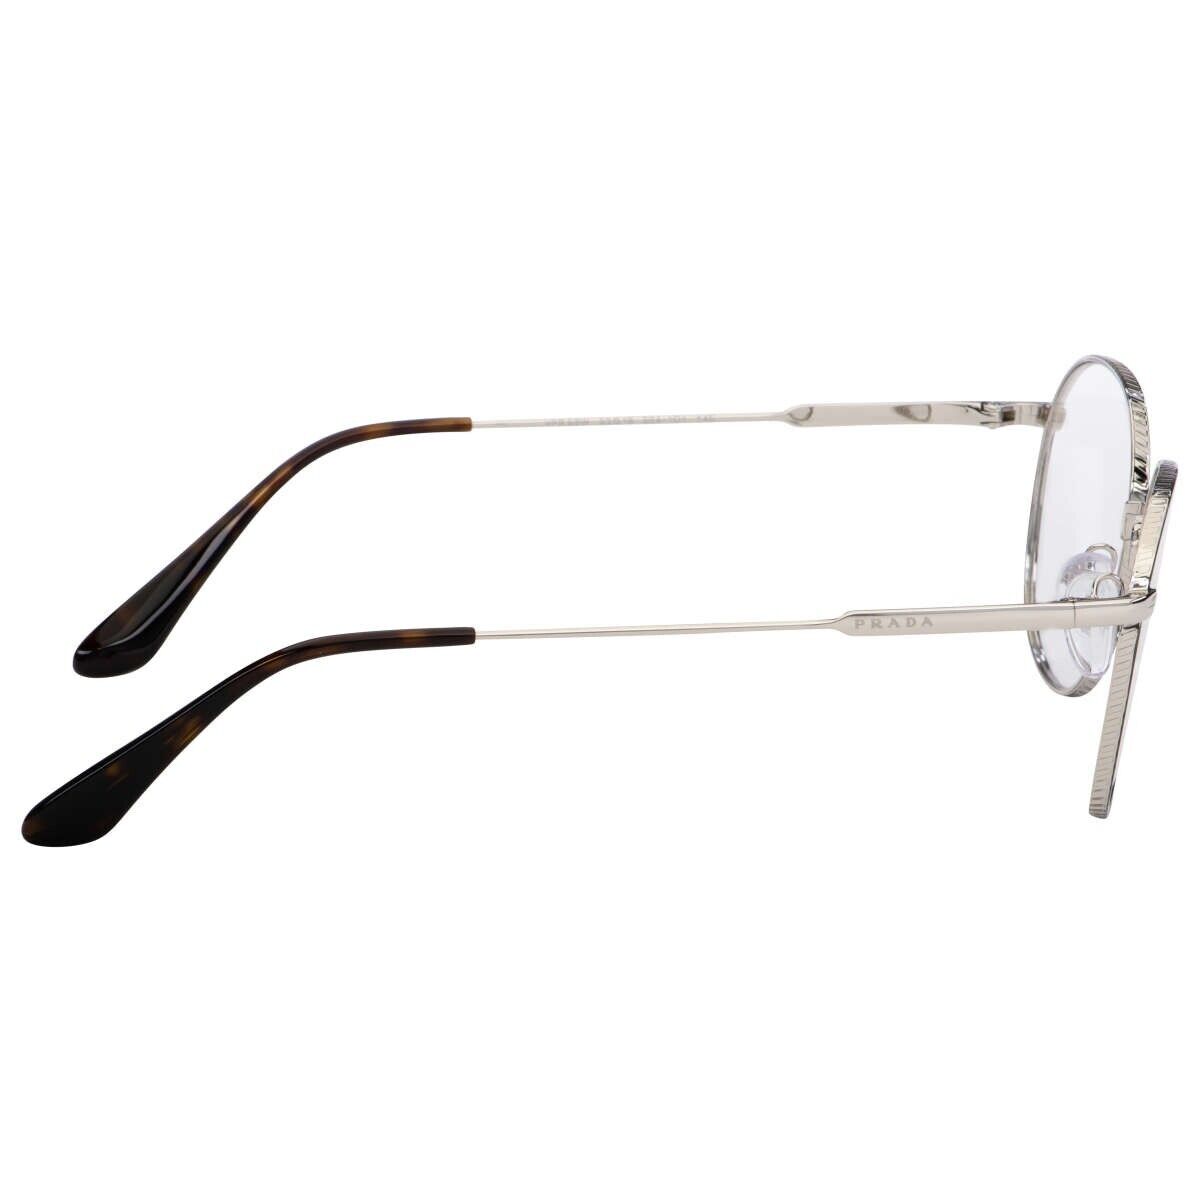 Prada Eyeglasses Frames PR 52WV 524-1O1 52-19-145 Silver / Black Made in Italy